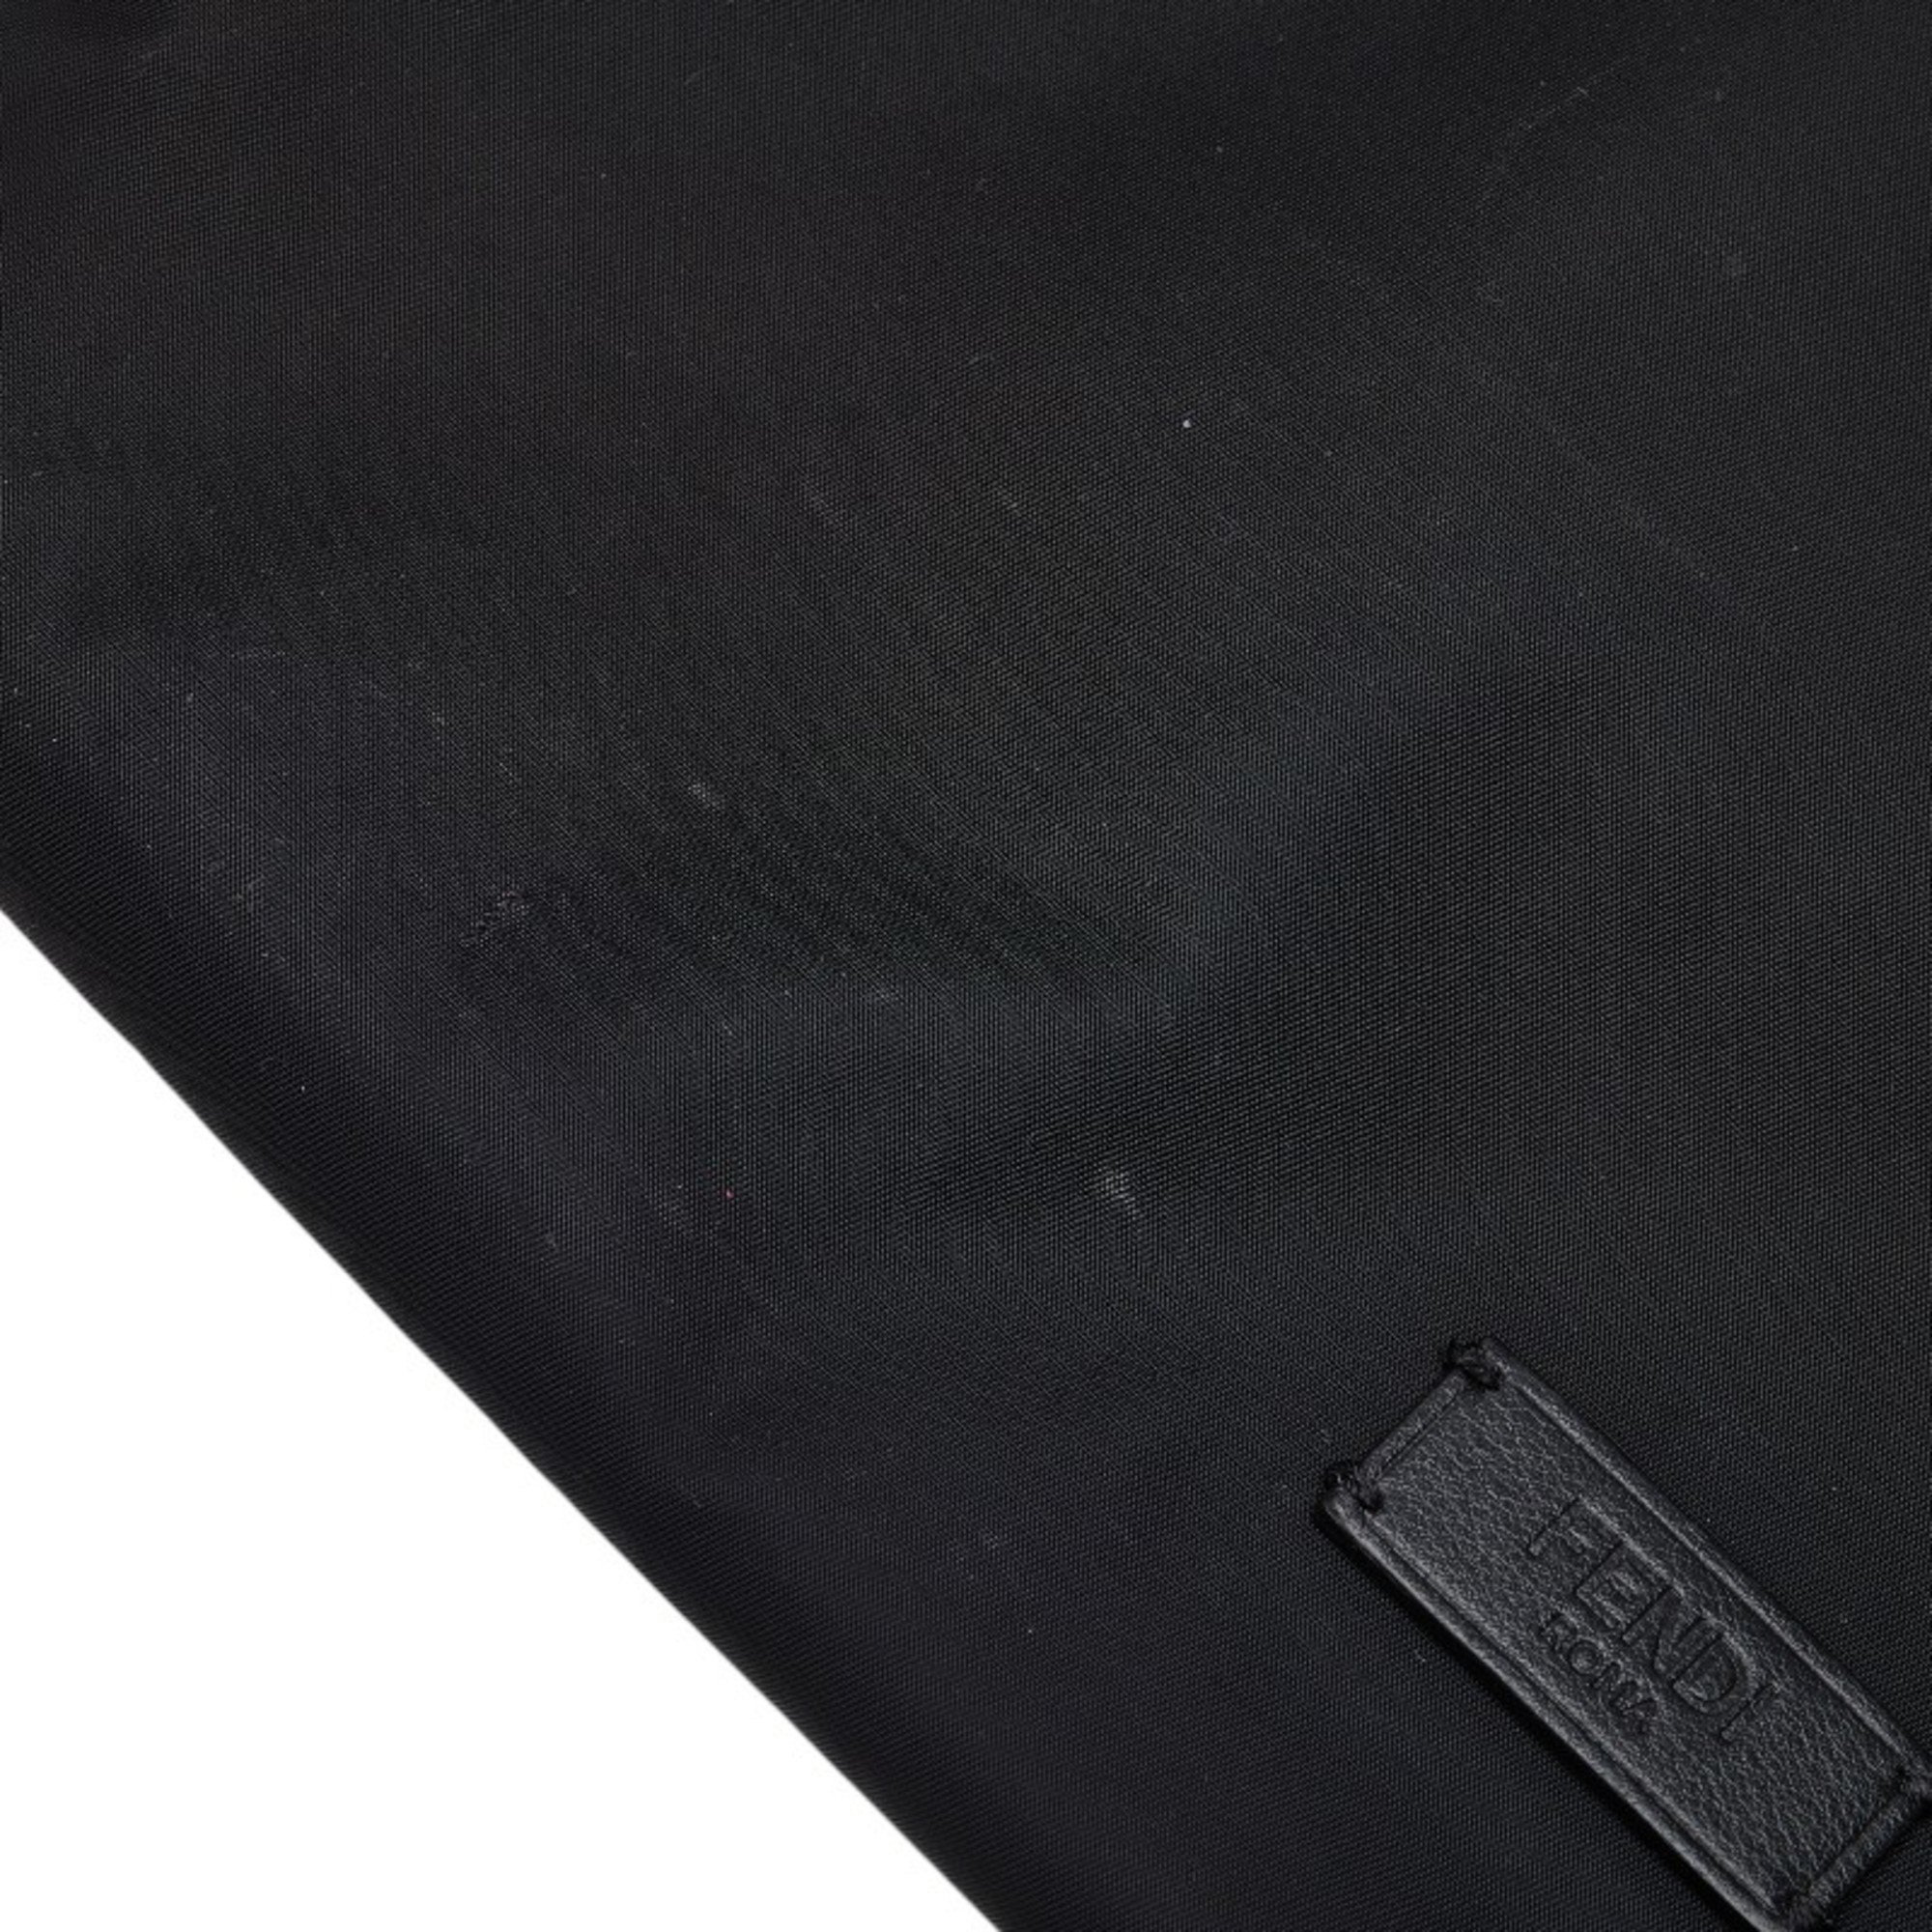 FENDI Monster Bugs Tote Bag 7V32 Black Nylon Leather Women's